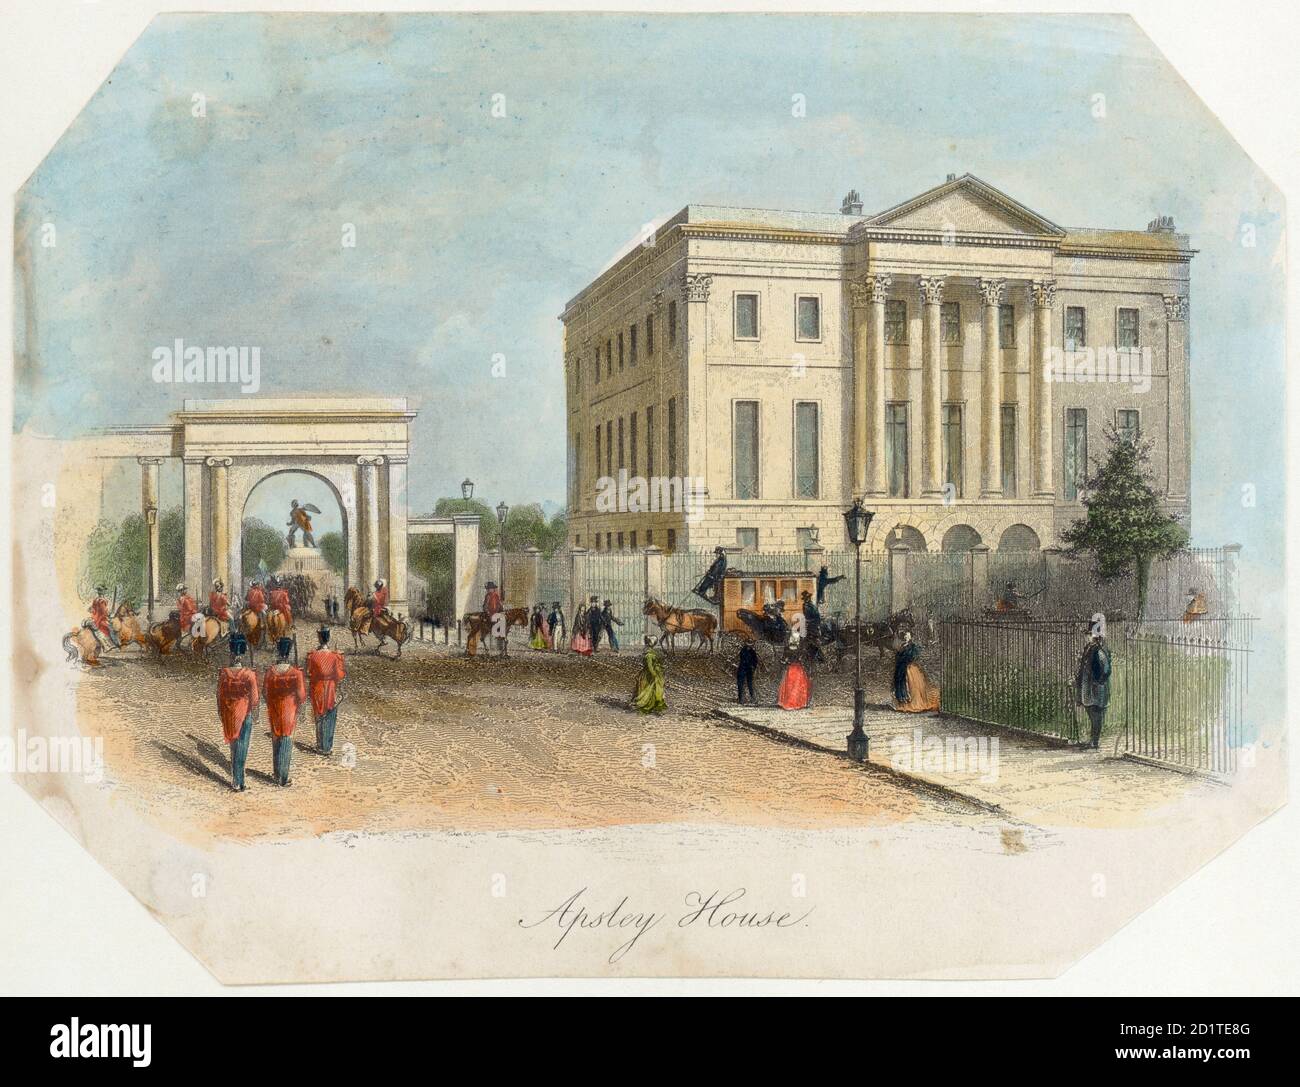 APSLEY HOUSE, Piccadilly, Hyde Park Corner, Londra. "Casa di Apsley". Incisione colorata in linea datata 1850. Originariamente costruita da Robert Adam nel 1771-8, nel 1830 la casa di Apsley era stata ampliata e rimodellata da Benjamin Dean Wyatt per essere la residenza principale di Londra del Duca di Wellington. L'adiacente schermo di Hyde Park fu costruito tra il 1822-25 da Decimus Burton. COLLEZIONE MAYSON BEETON Foto Stock